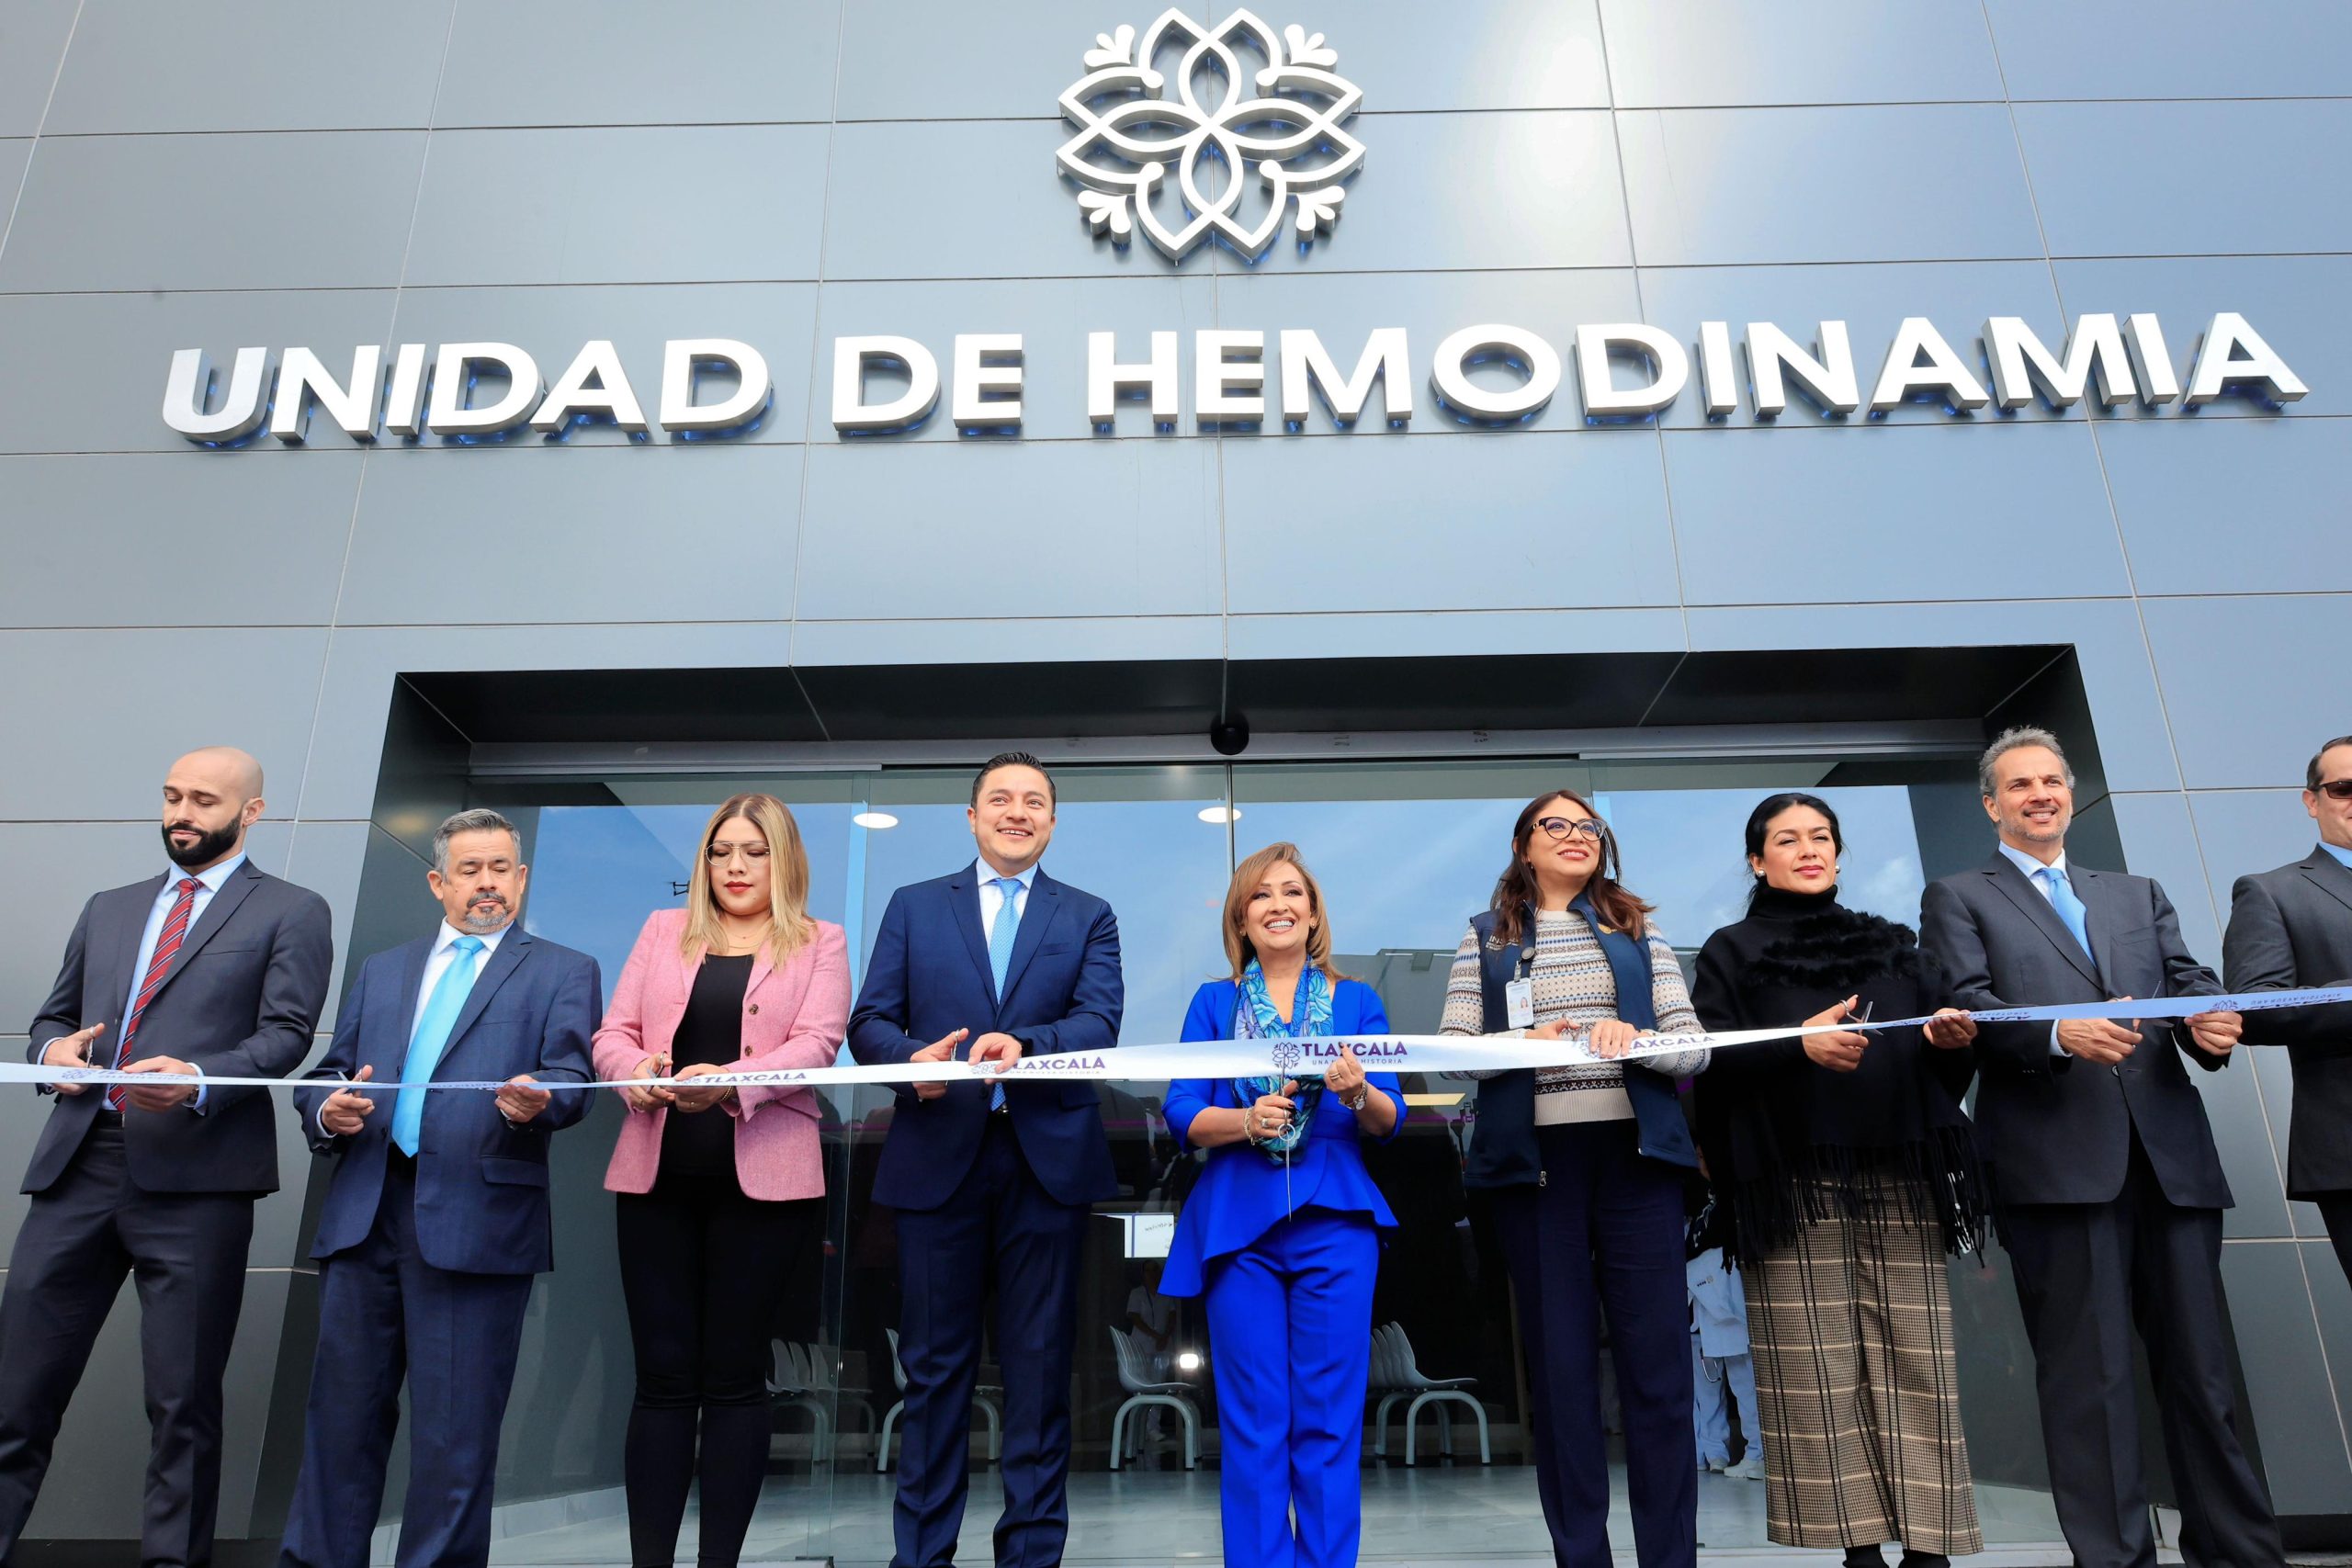 CUMPLE GOBERNADORA CON LA PRIMERA UNIDAD DE HEMODINAMIA